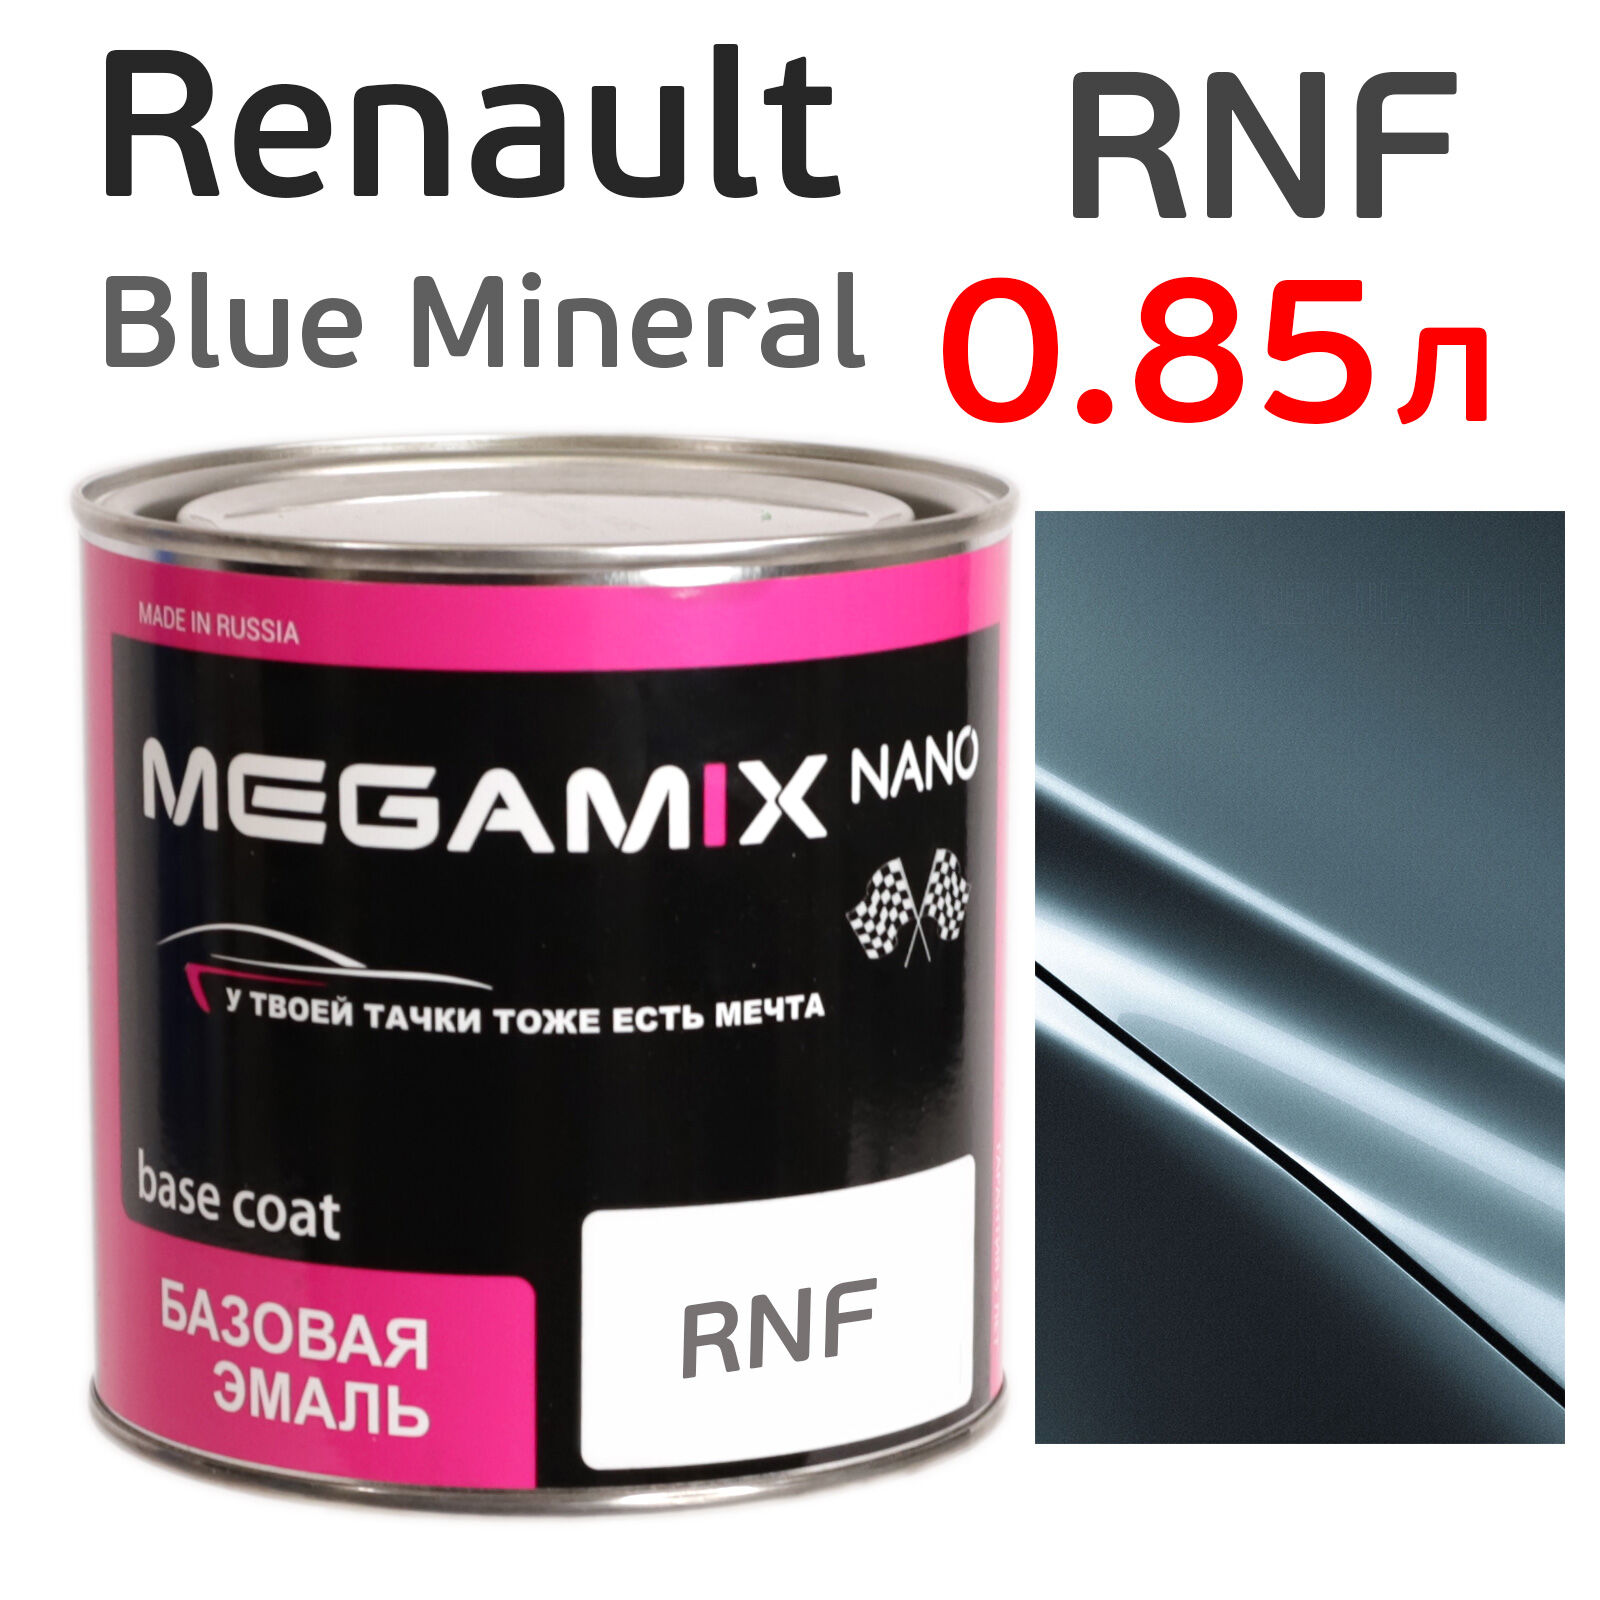 Автоэмаль MegaMIX (0.85л) Renault RNF Blue Mineral, металлик, базисная эмаль под лак